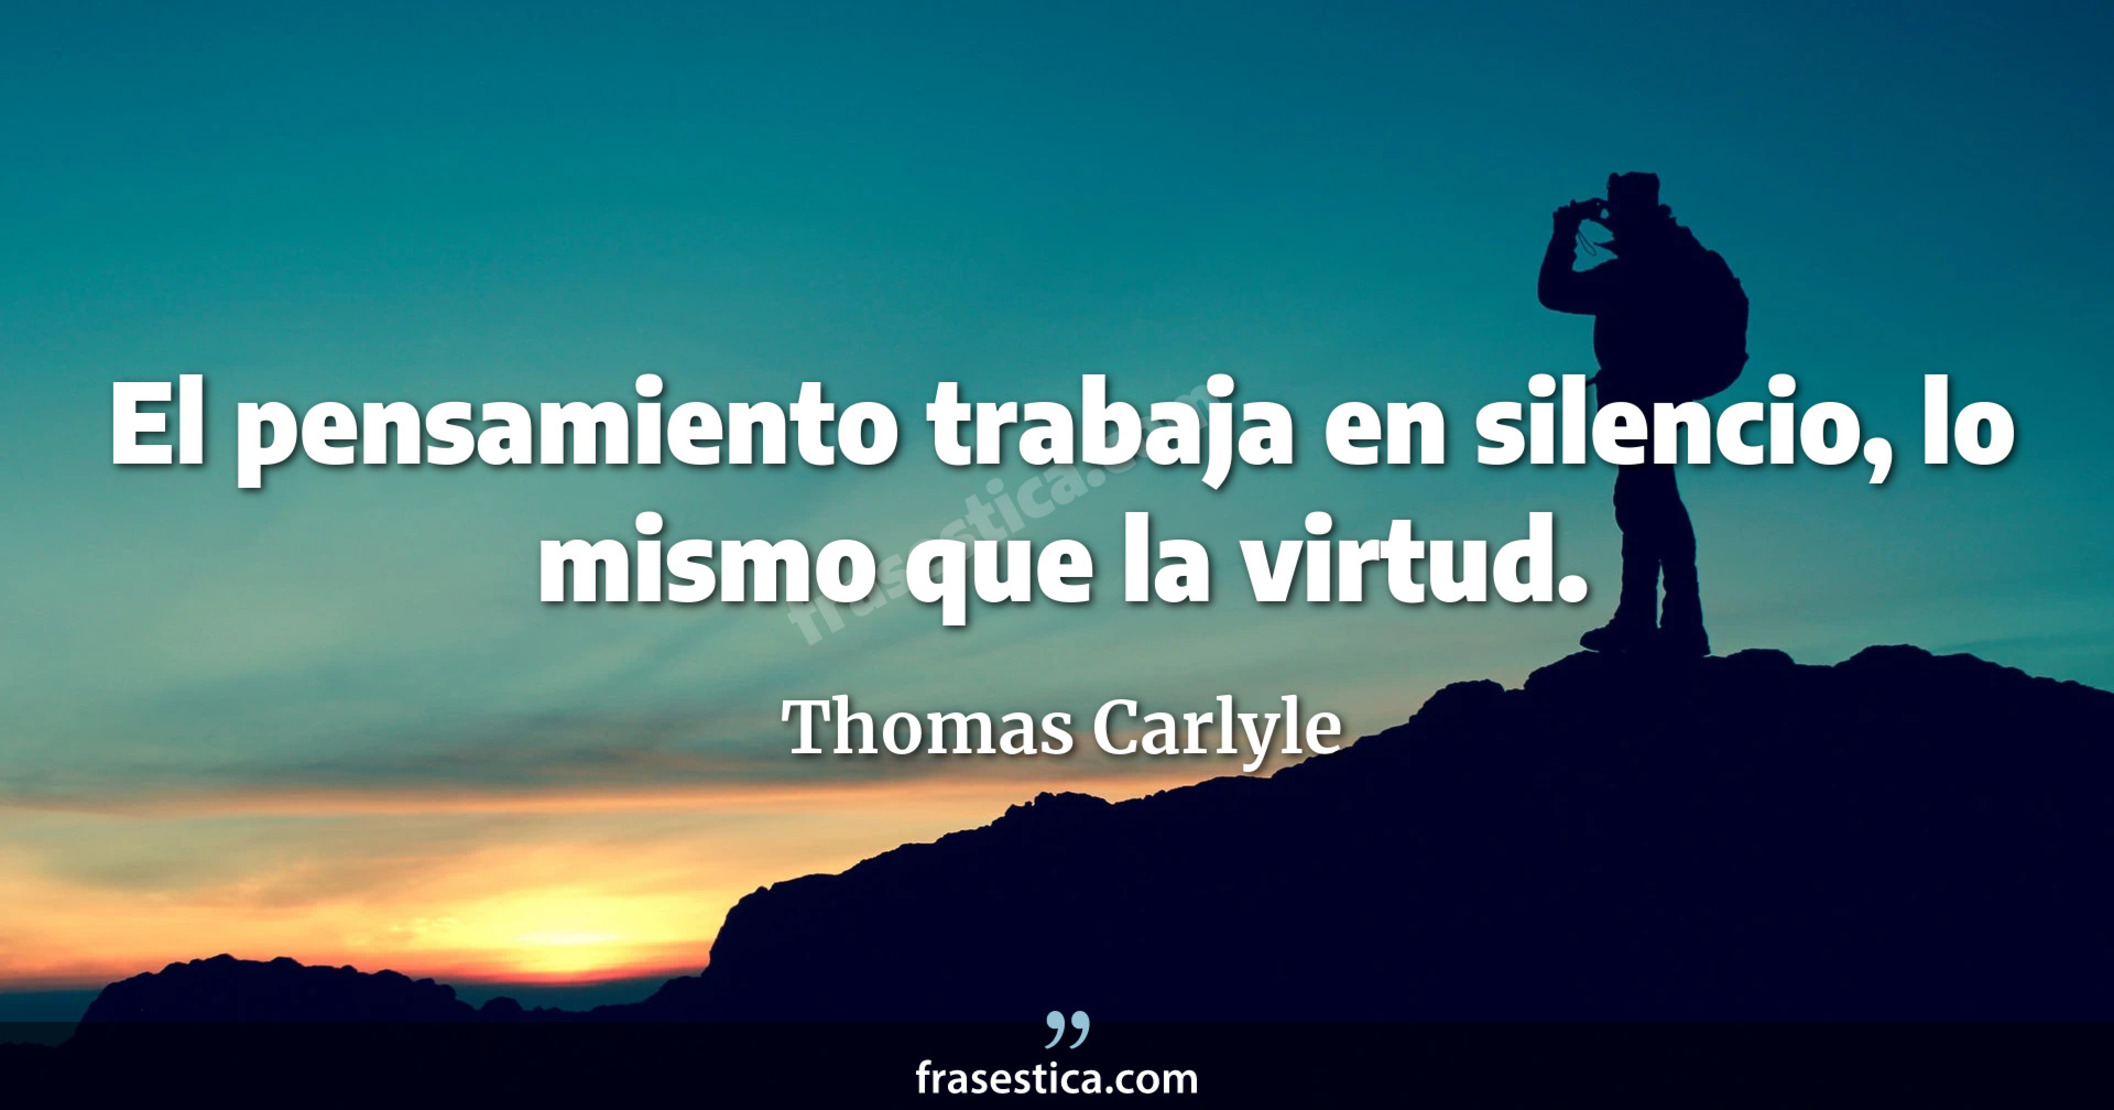 El pensamiento trabaja en silencio, lo mismo que la virtud. - Thomas Carlyle